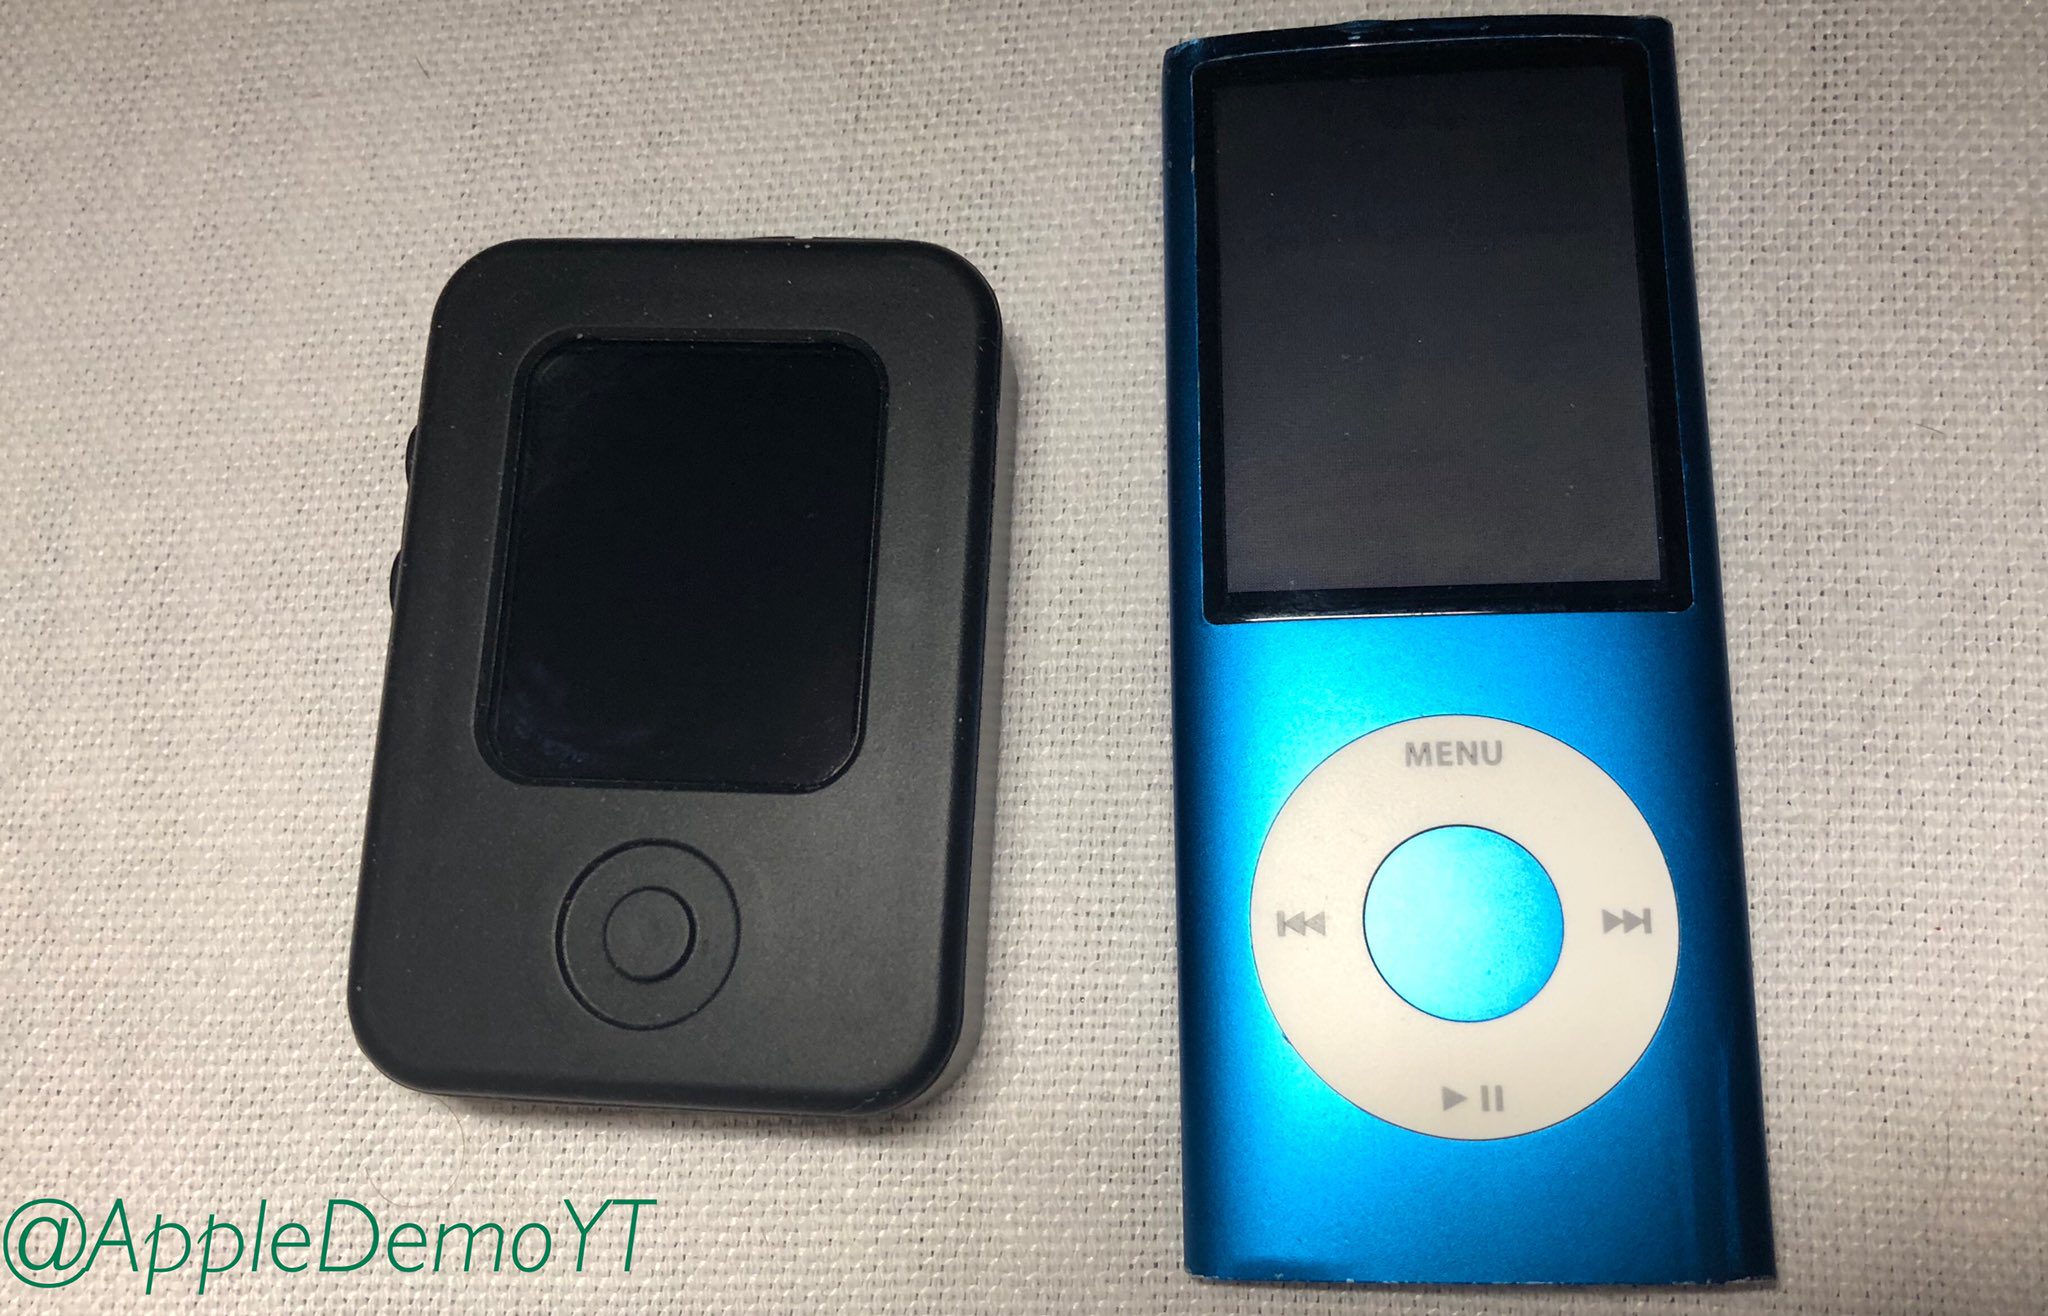 Fotos anzeigen Apple Watch Prototyp in iPod Nano-ähnlicher Sicherheitshülle 354